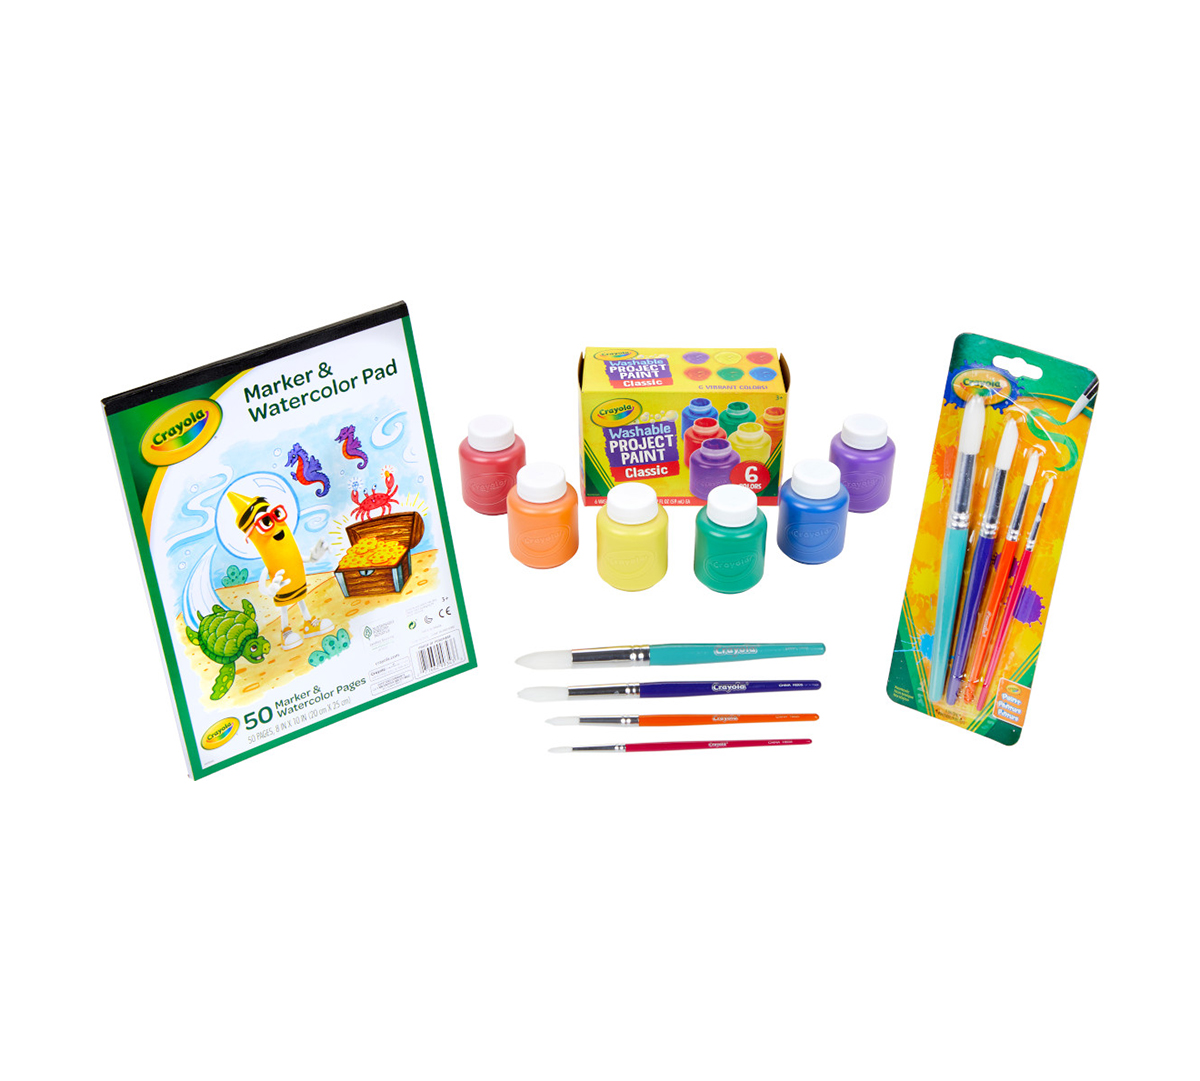 https://shop.crayola.com/on/demandware.static/-/Sites-crayola-storefront/default/dwfd0866af/images/04-1078-A-000_Kids-Paint-Set_SIOC_C1.jpg